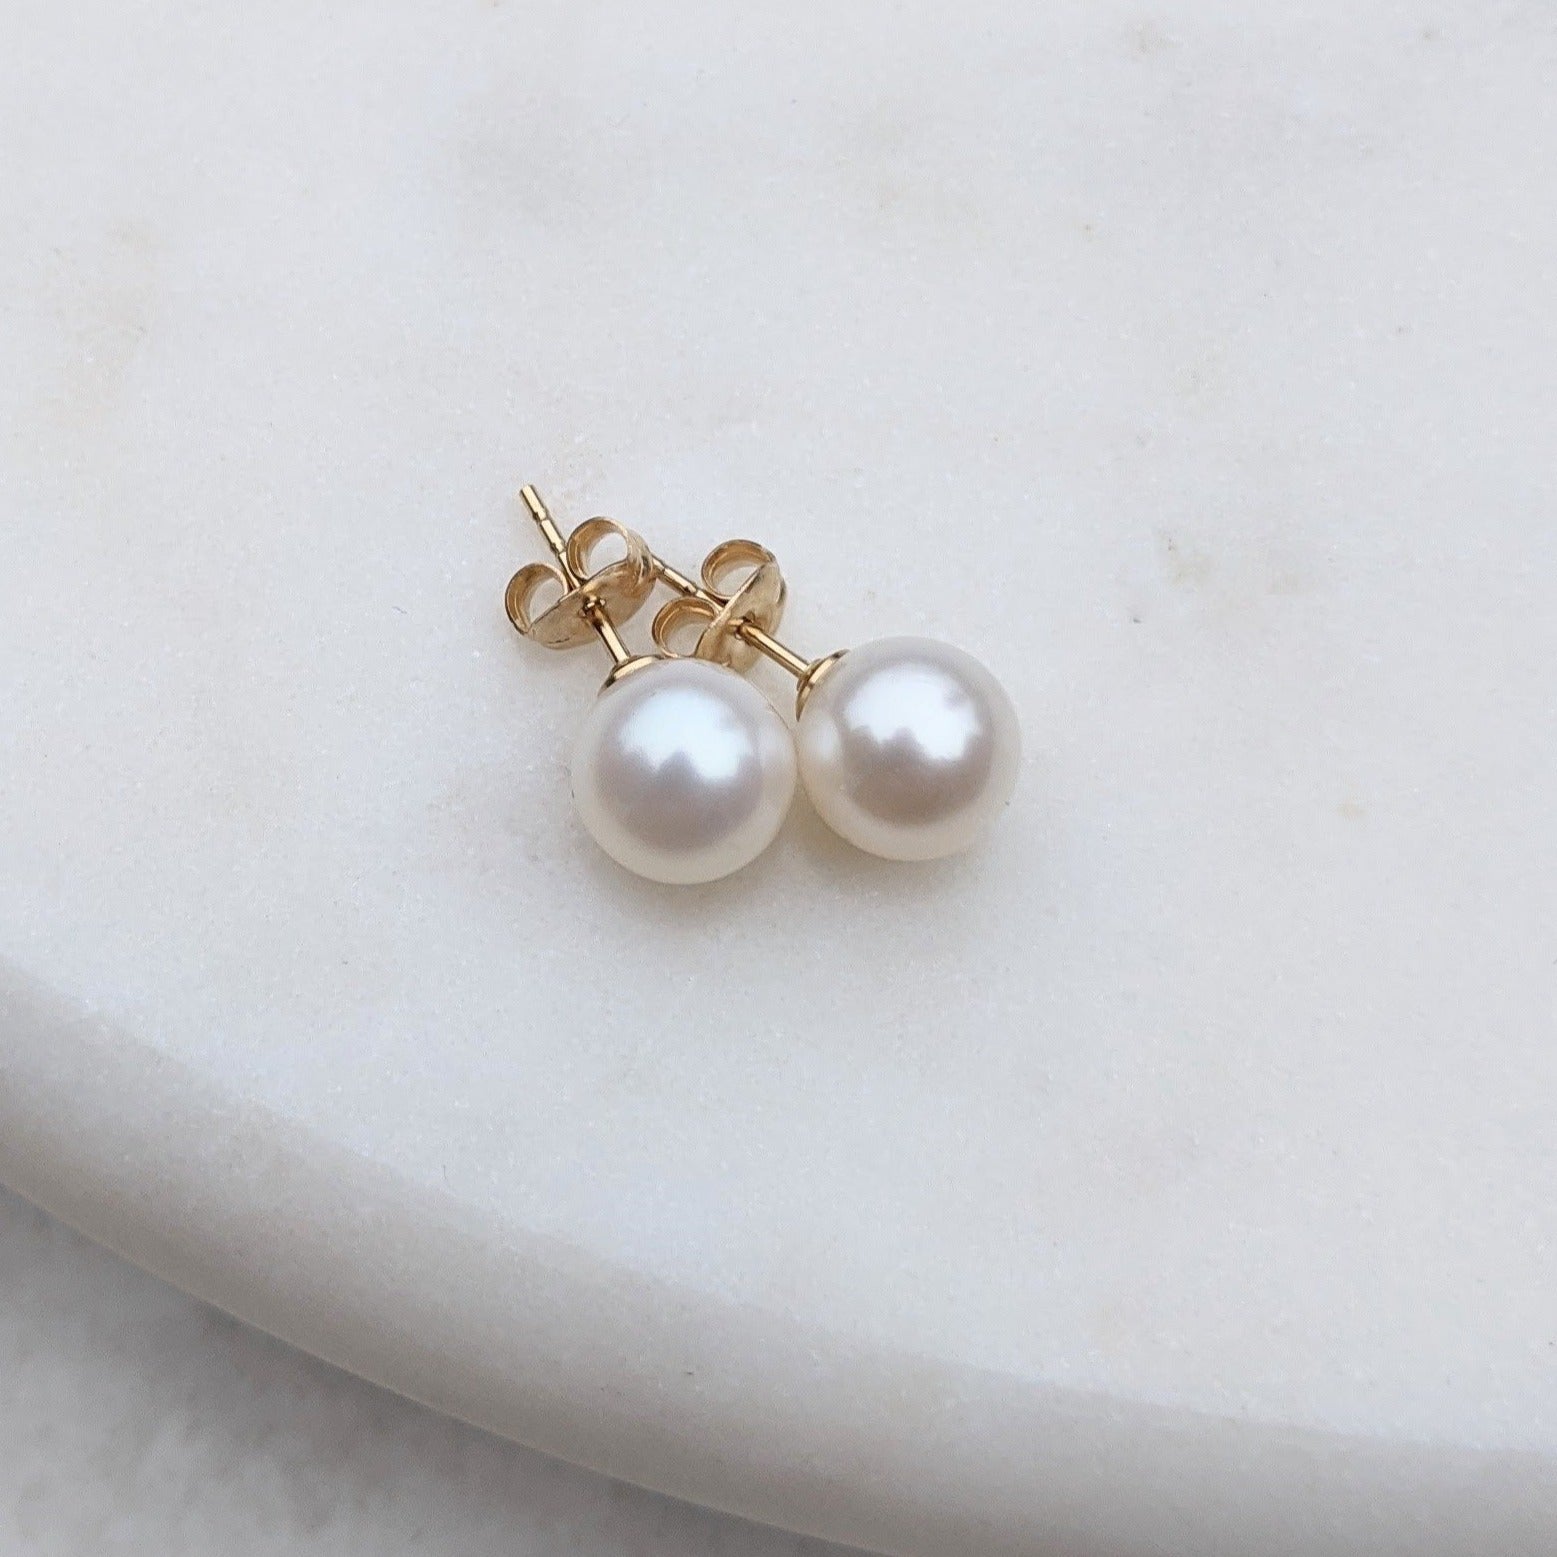 Round pearl stud earrings